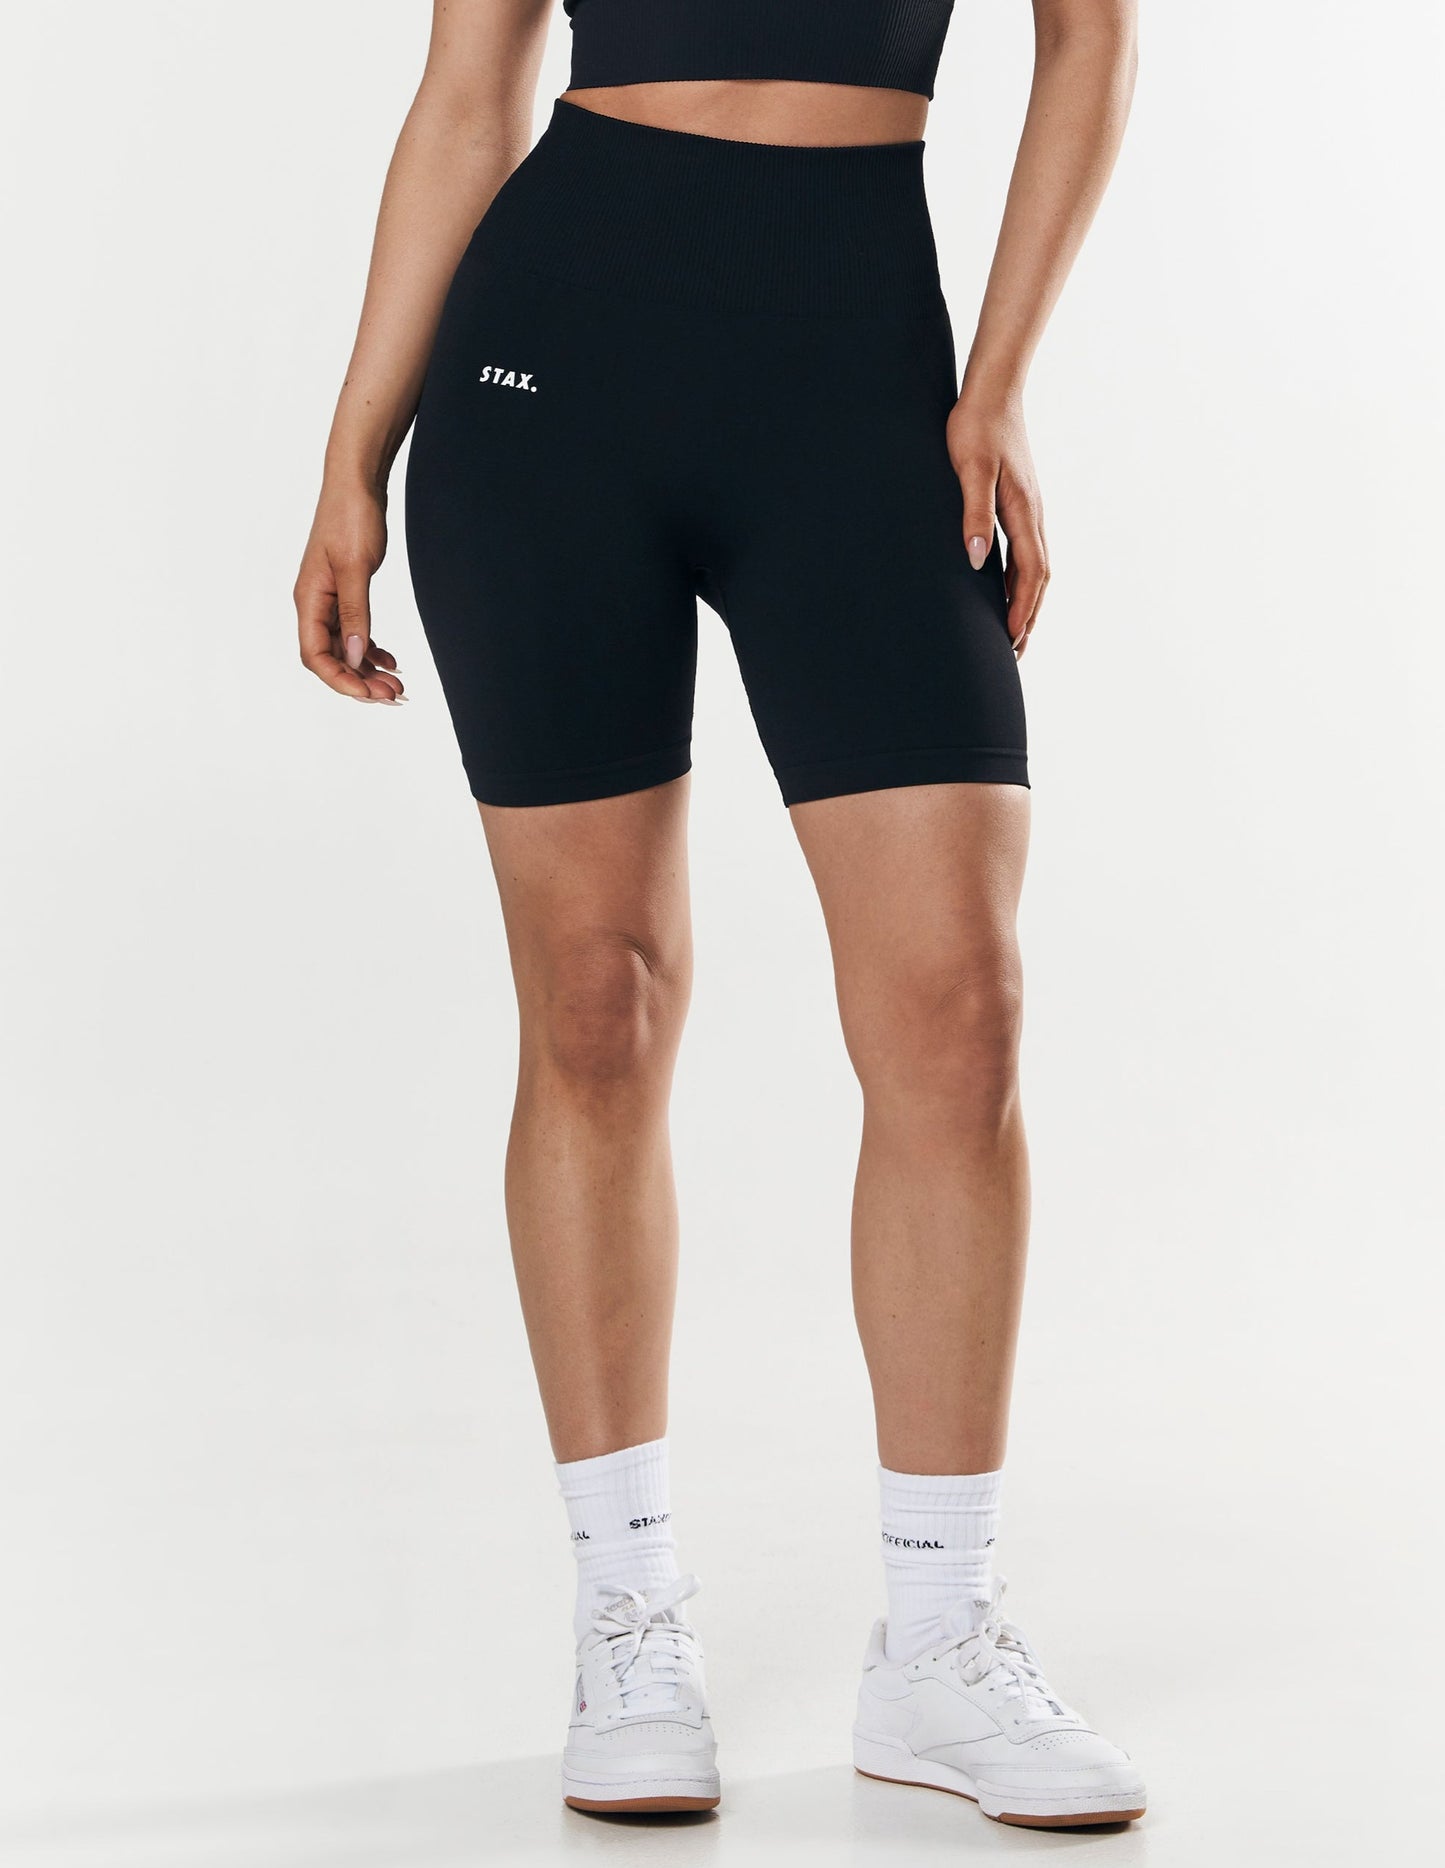 Premium Seamless Midi Bike Shorts - Astro